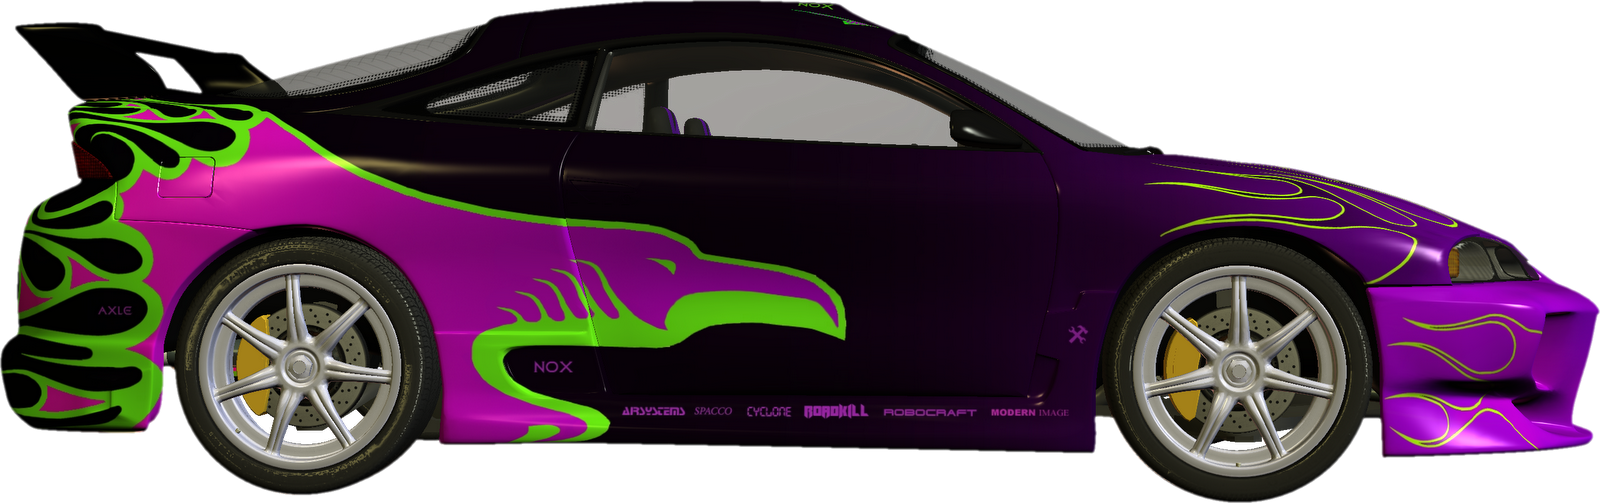 Race clipart foot race. Vehicle purple car pencil